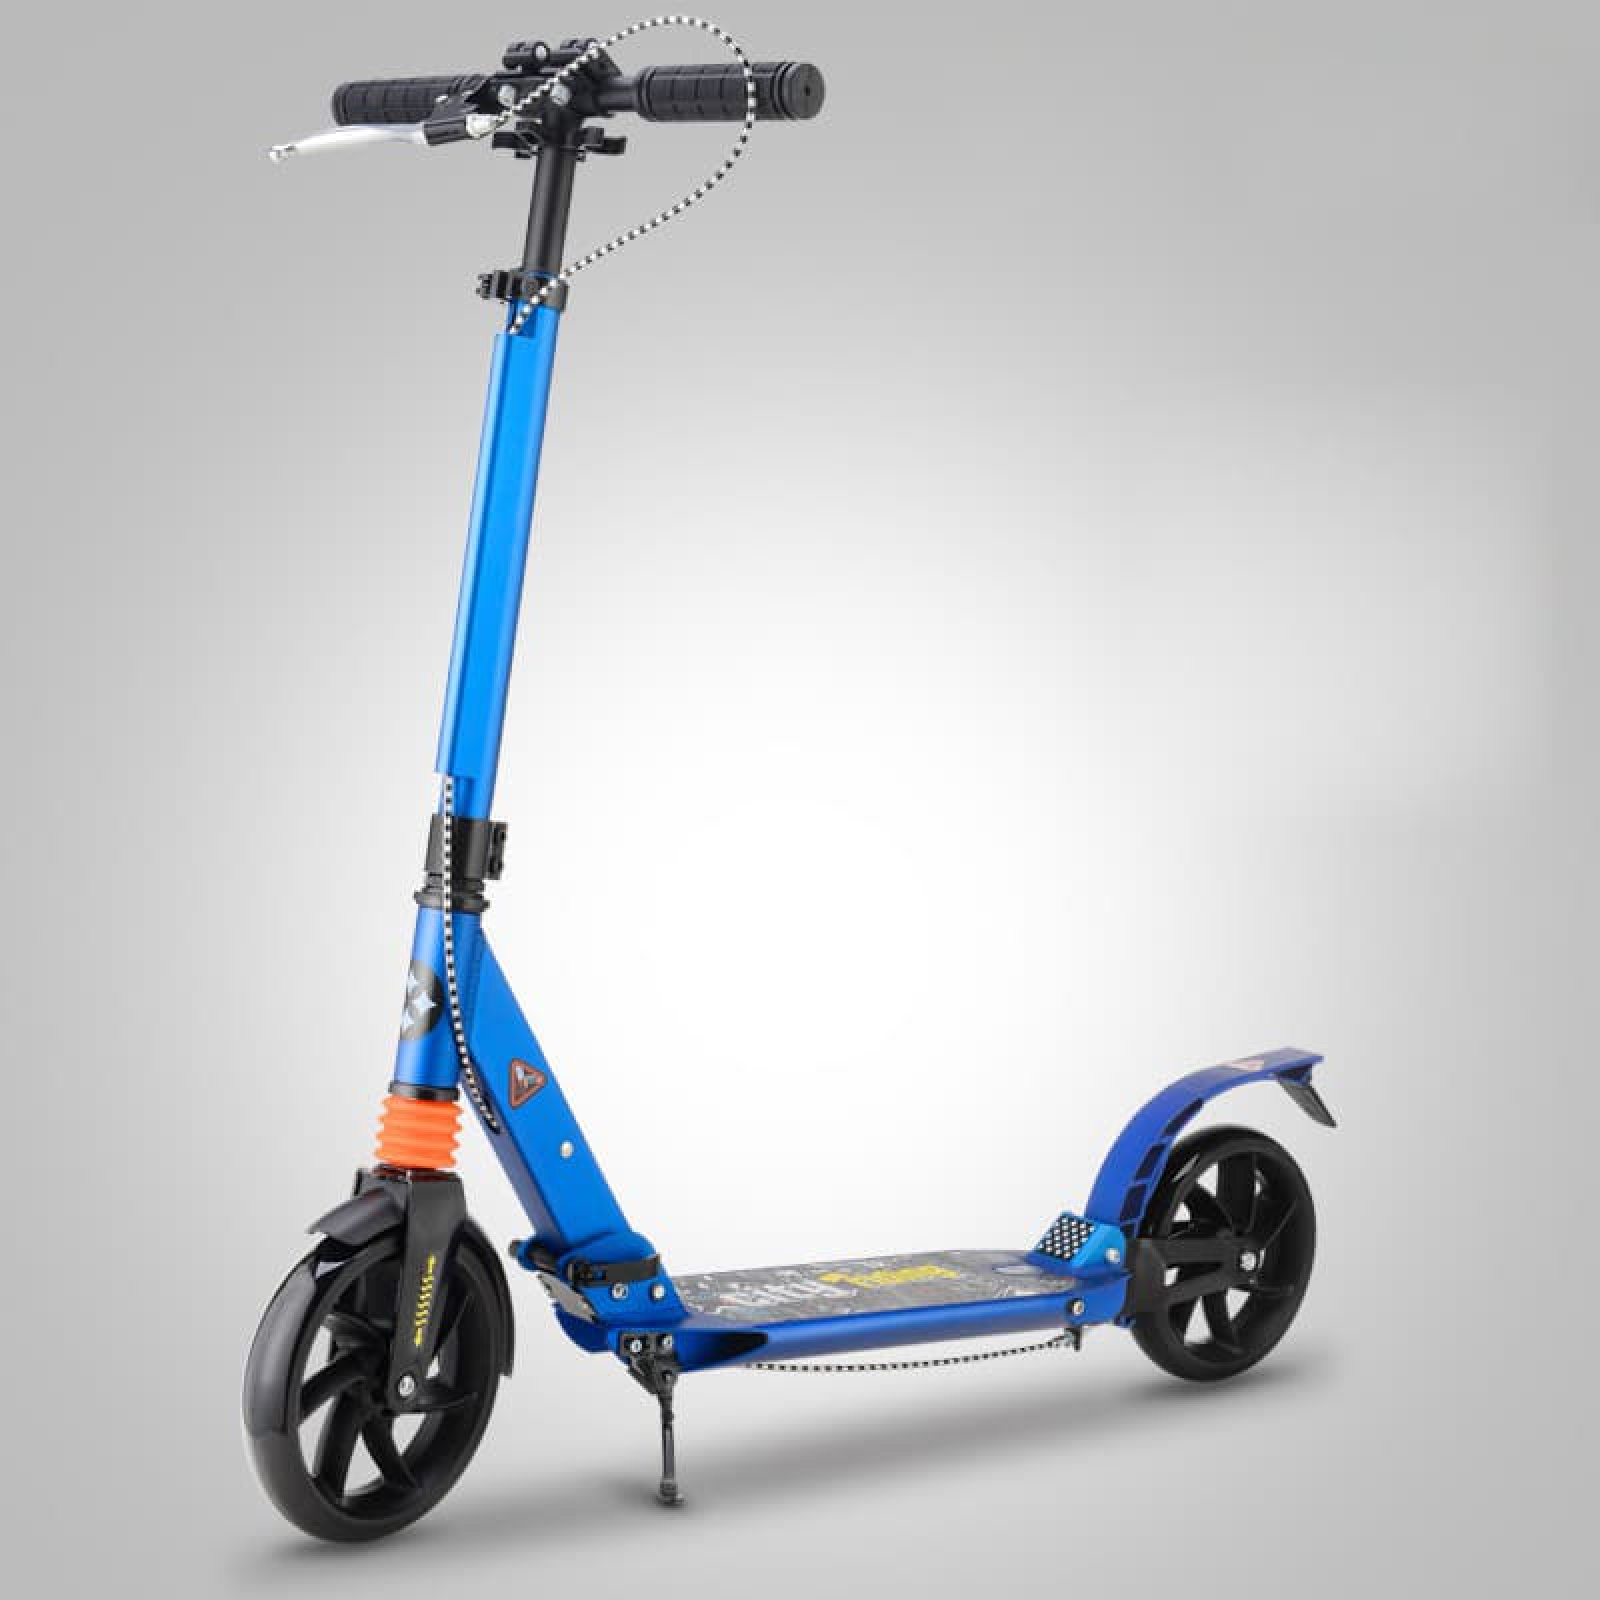 Xe trượt scooter điện là công nghệ mới nhất trong ngành công nghệ gia đình. Sản phẩm này đang trở thành một xu hướng phổ biến ở nhiều quốc gia trên toàn thế giới. Xem các hình ảnh của các loại xe trượt scooter điện để tìm hiểu thêm về các tính năng và ưu điểm của chúng!